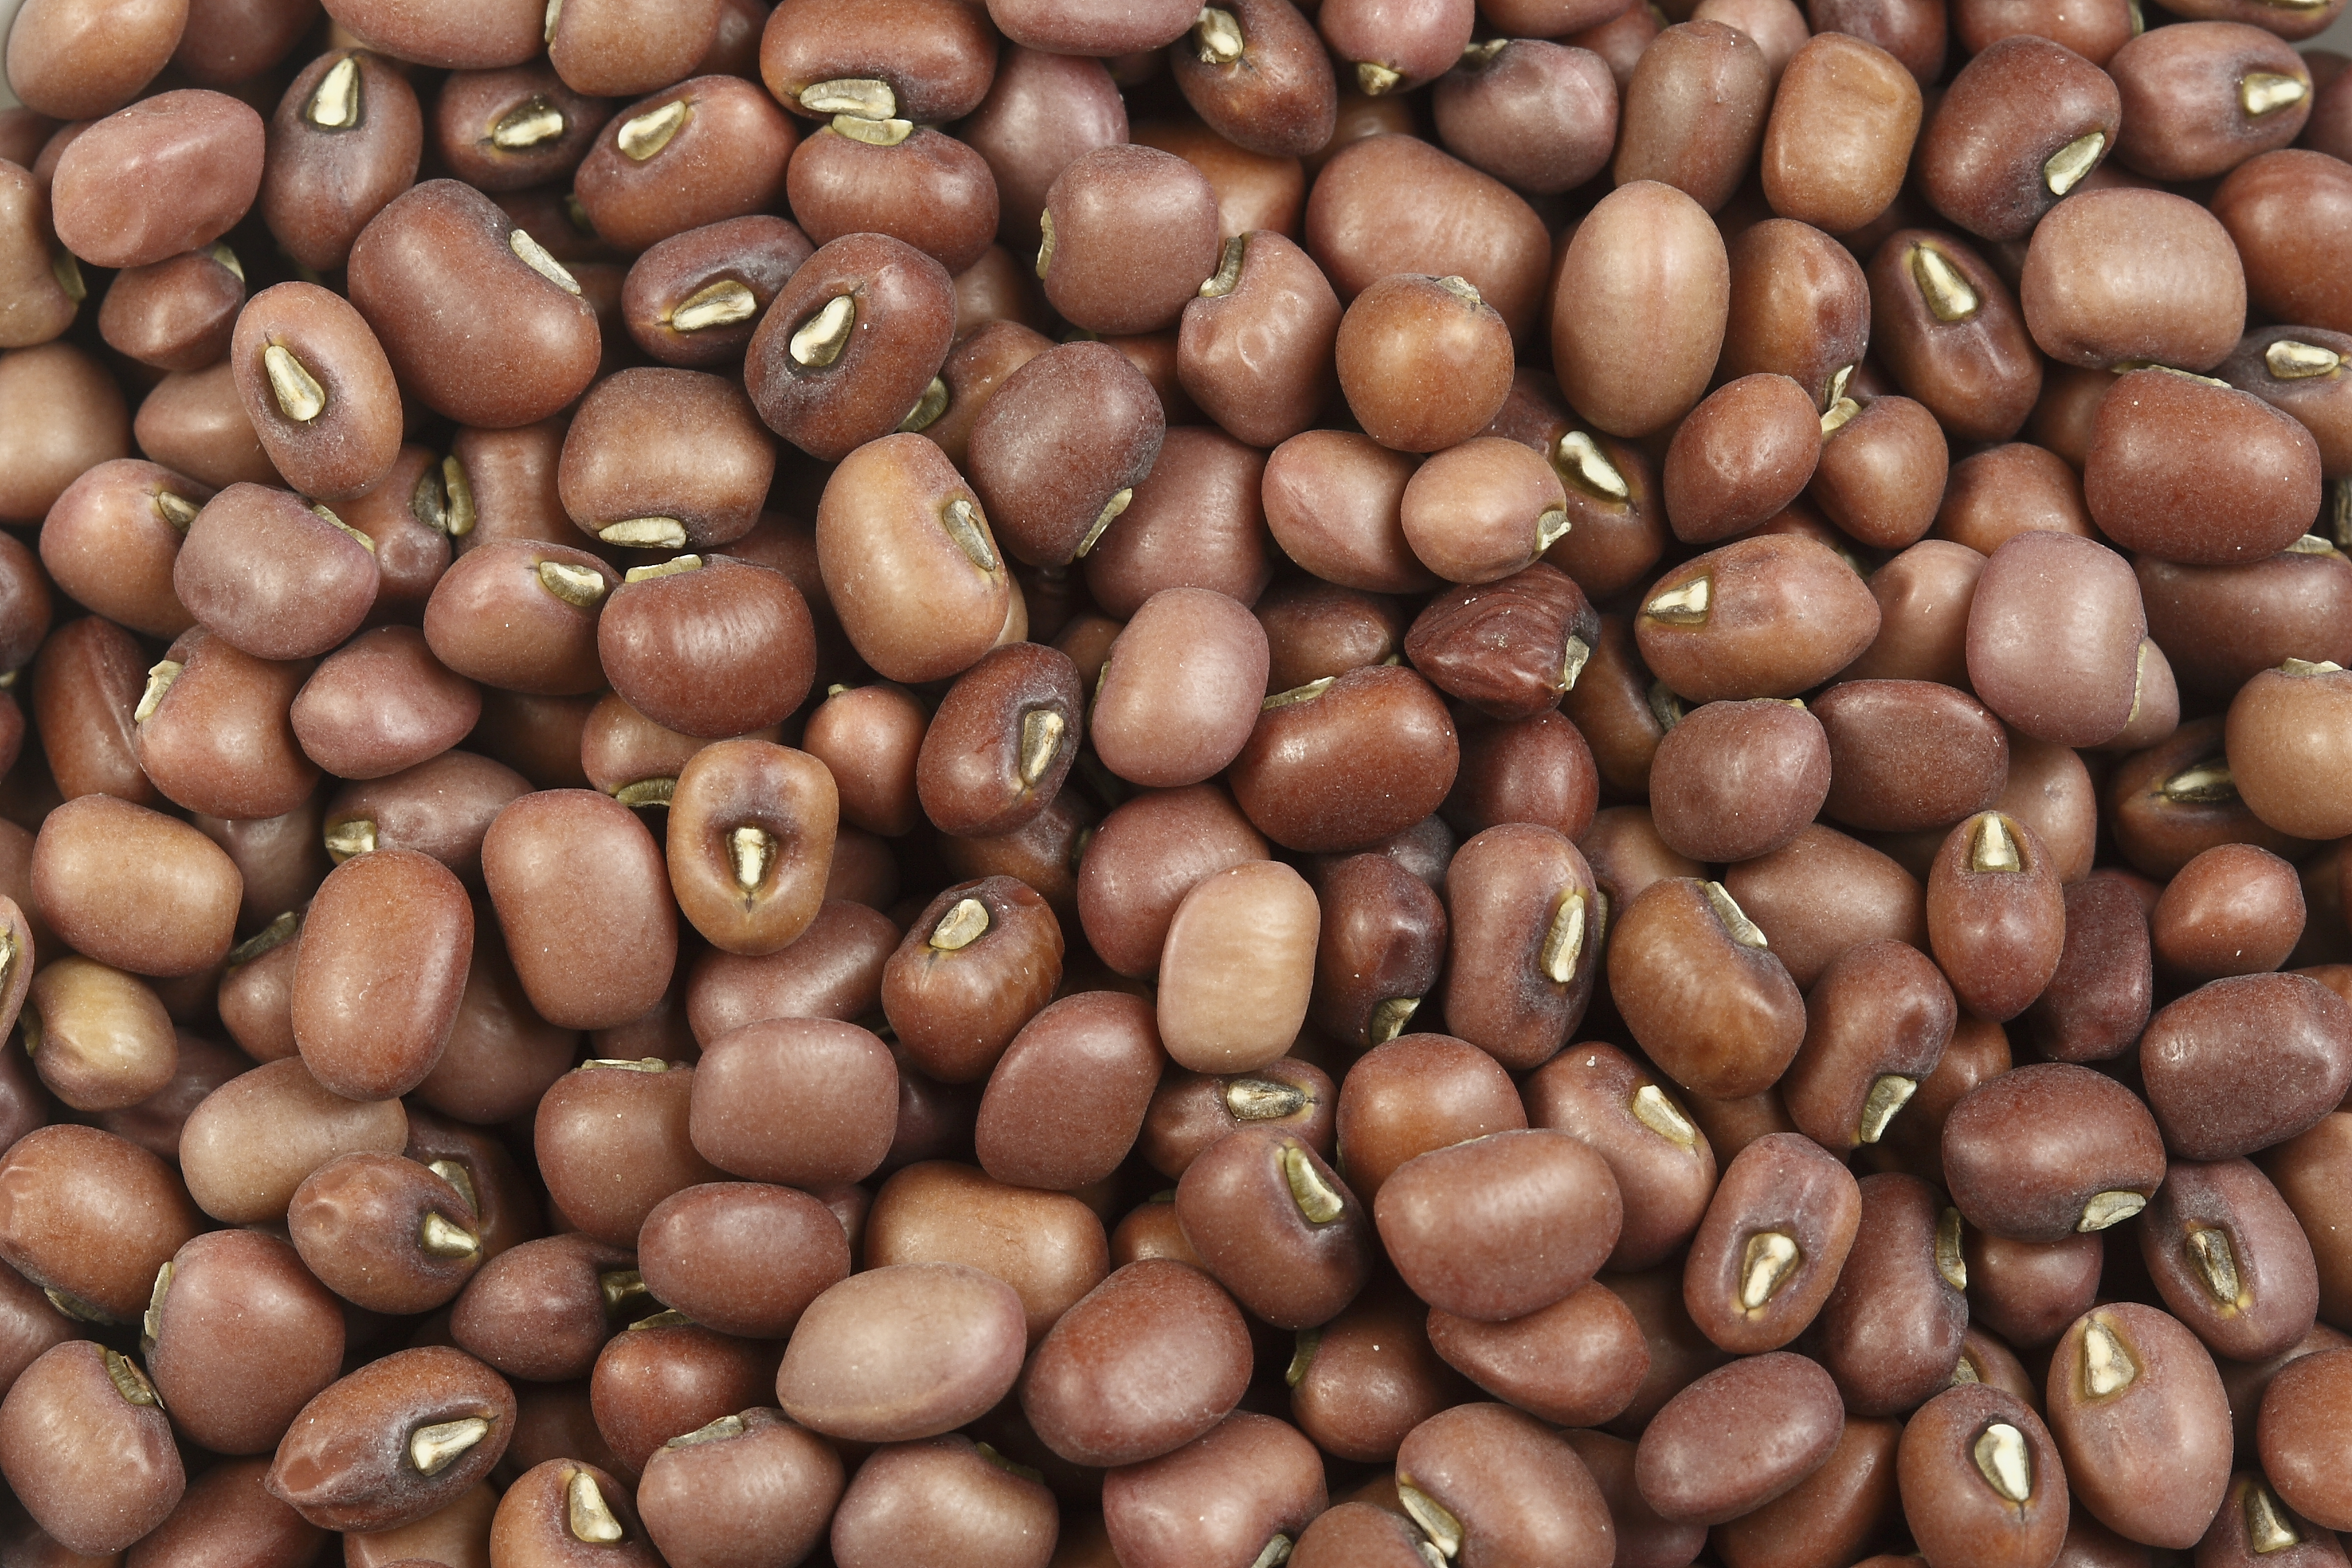 Red Mung Beans